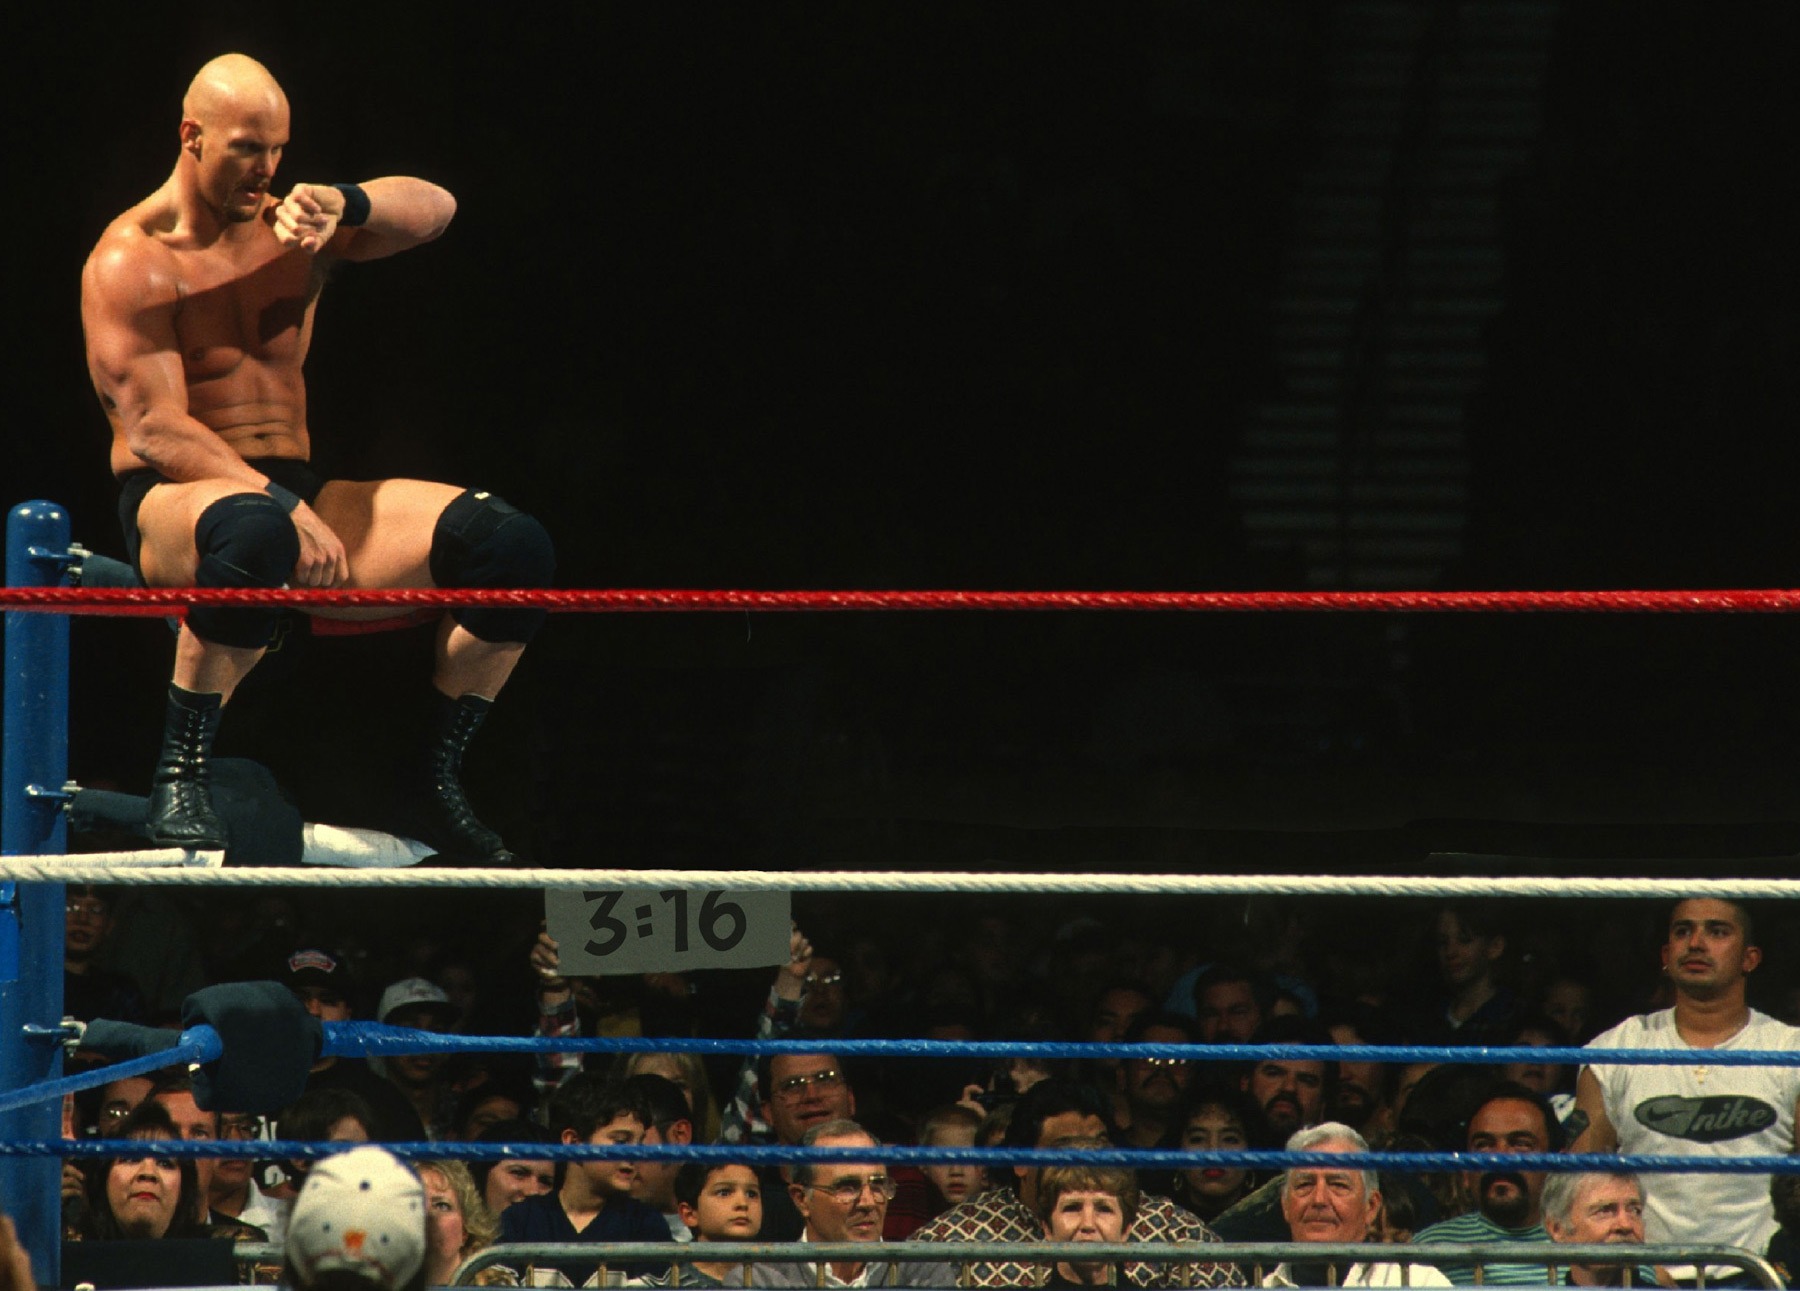 Steve Austin in a wrestling ring